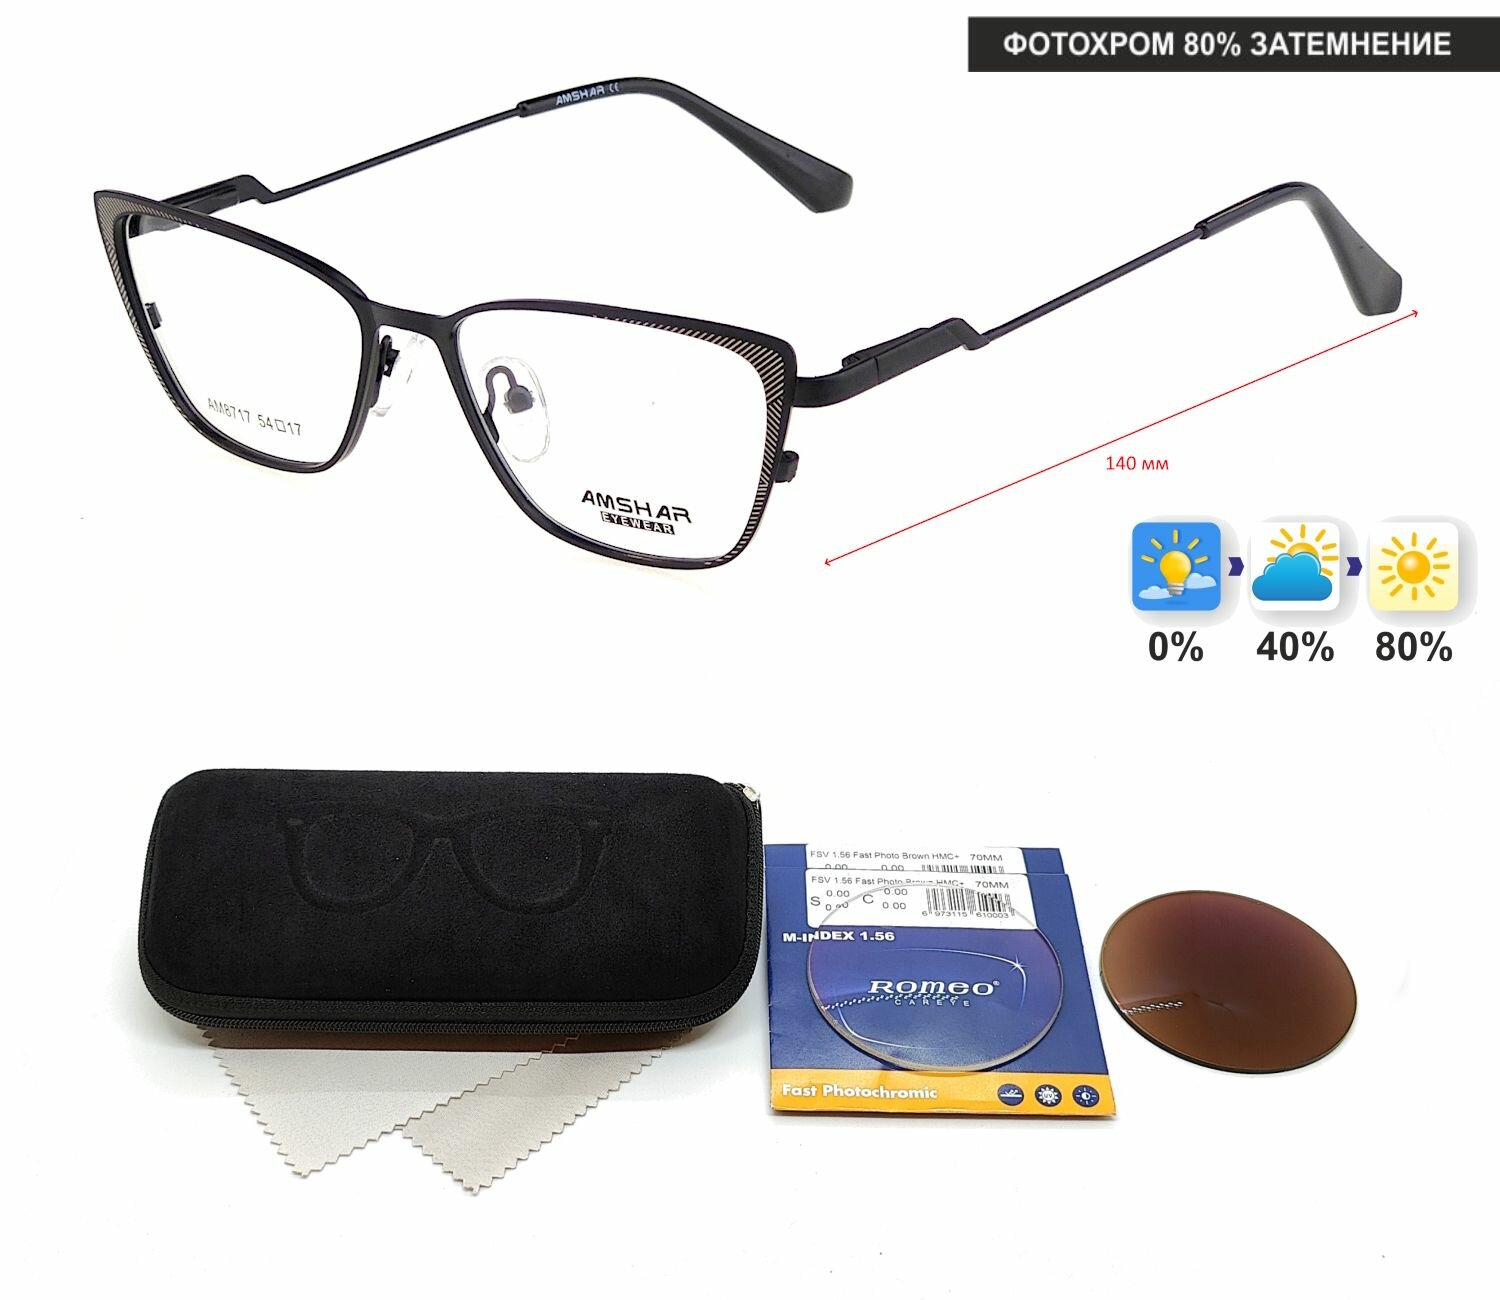 Фотохромные очки с футляром-змейка AMSHAR мод. 8717 Цвет 6 с линзами ROMEO 1.56 FAST Photocolor BROWN, HMC+ -3.50 РЦ 62-64